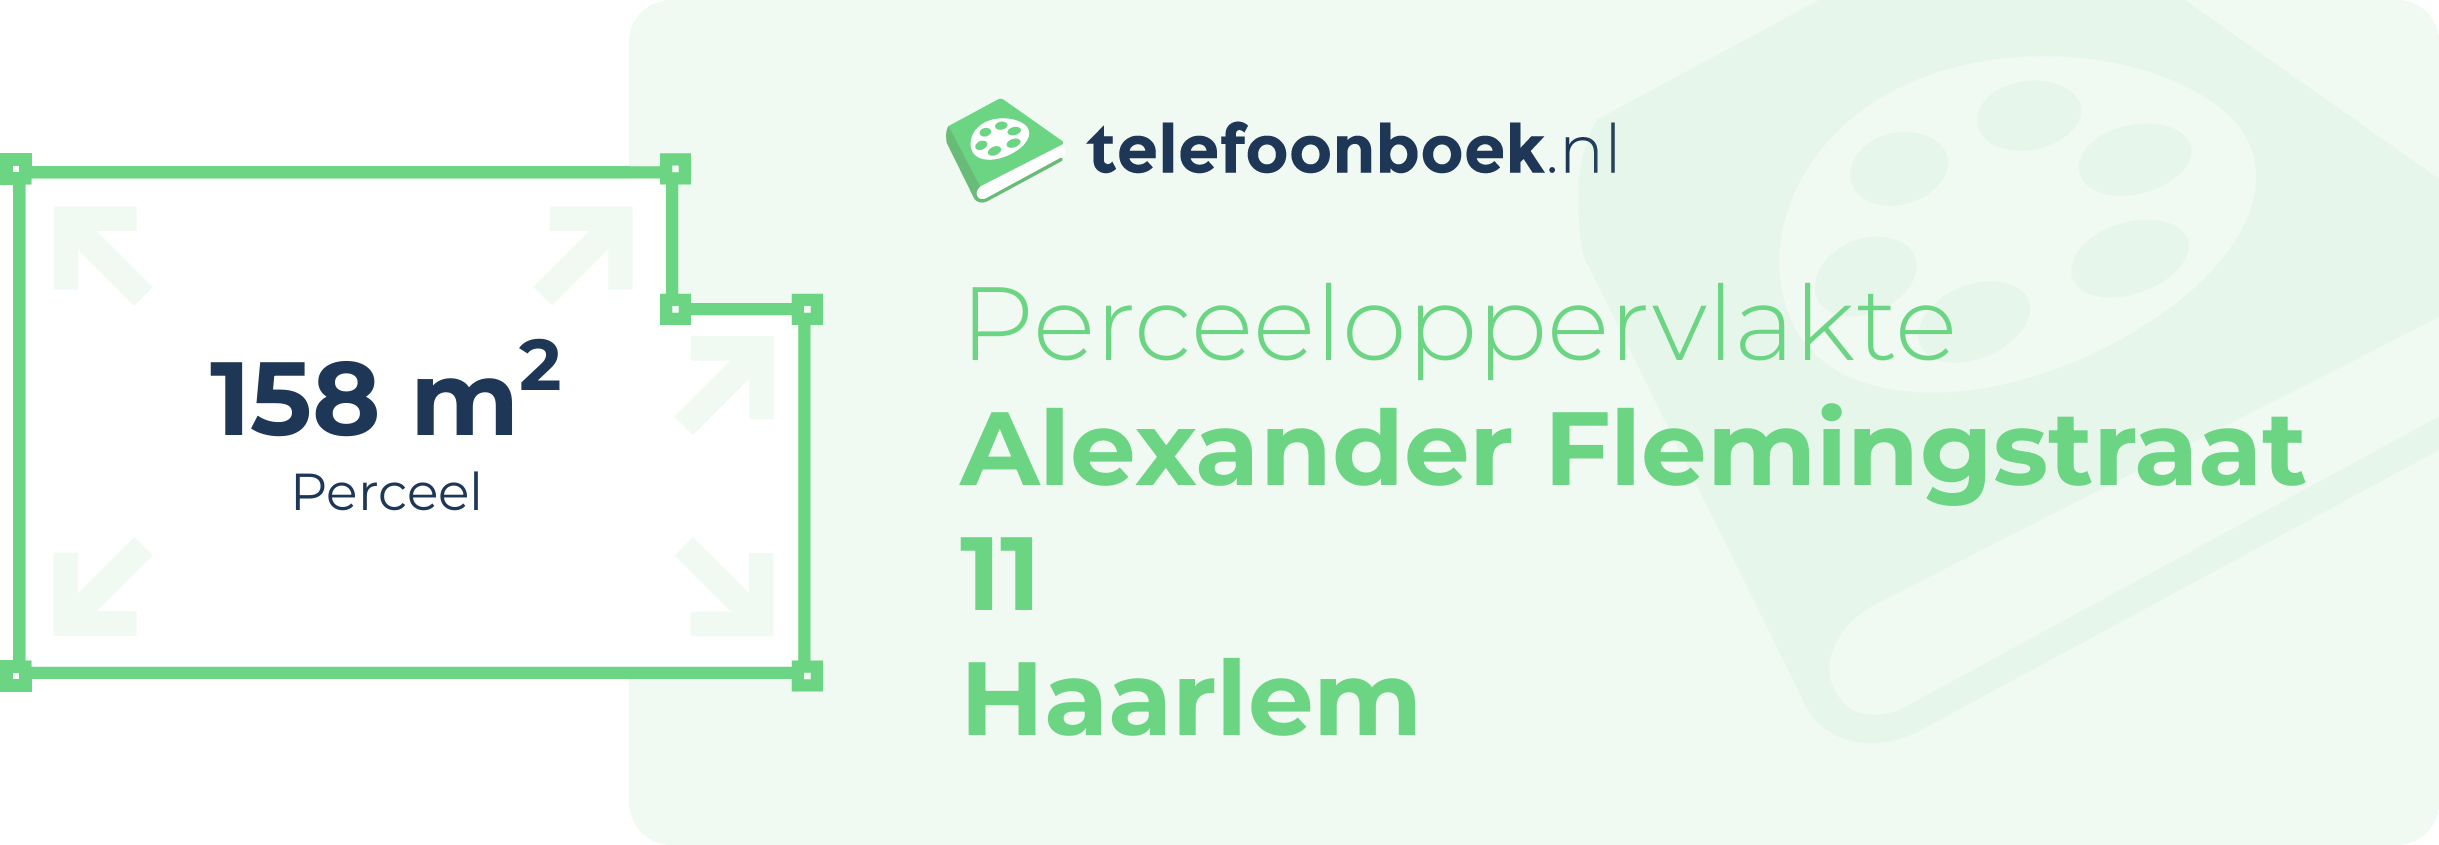 Perceeloppervlakte Alexander Flemingstraat 11 Haarlem